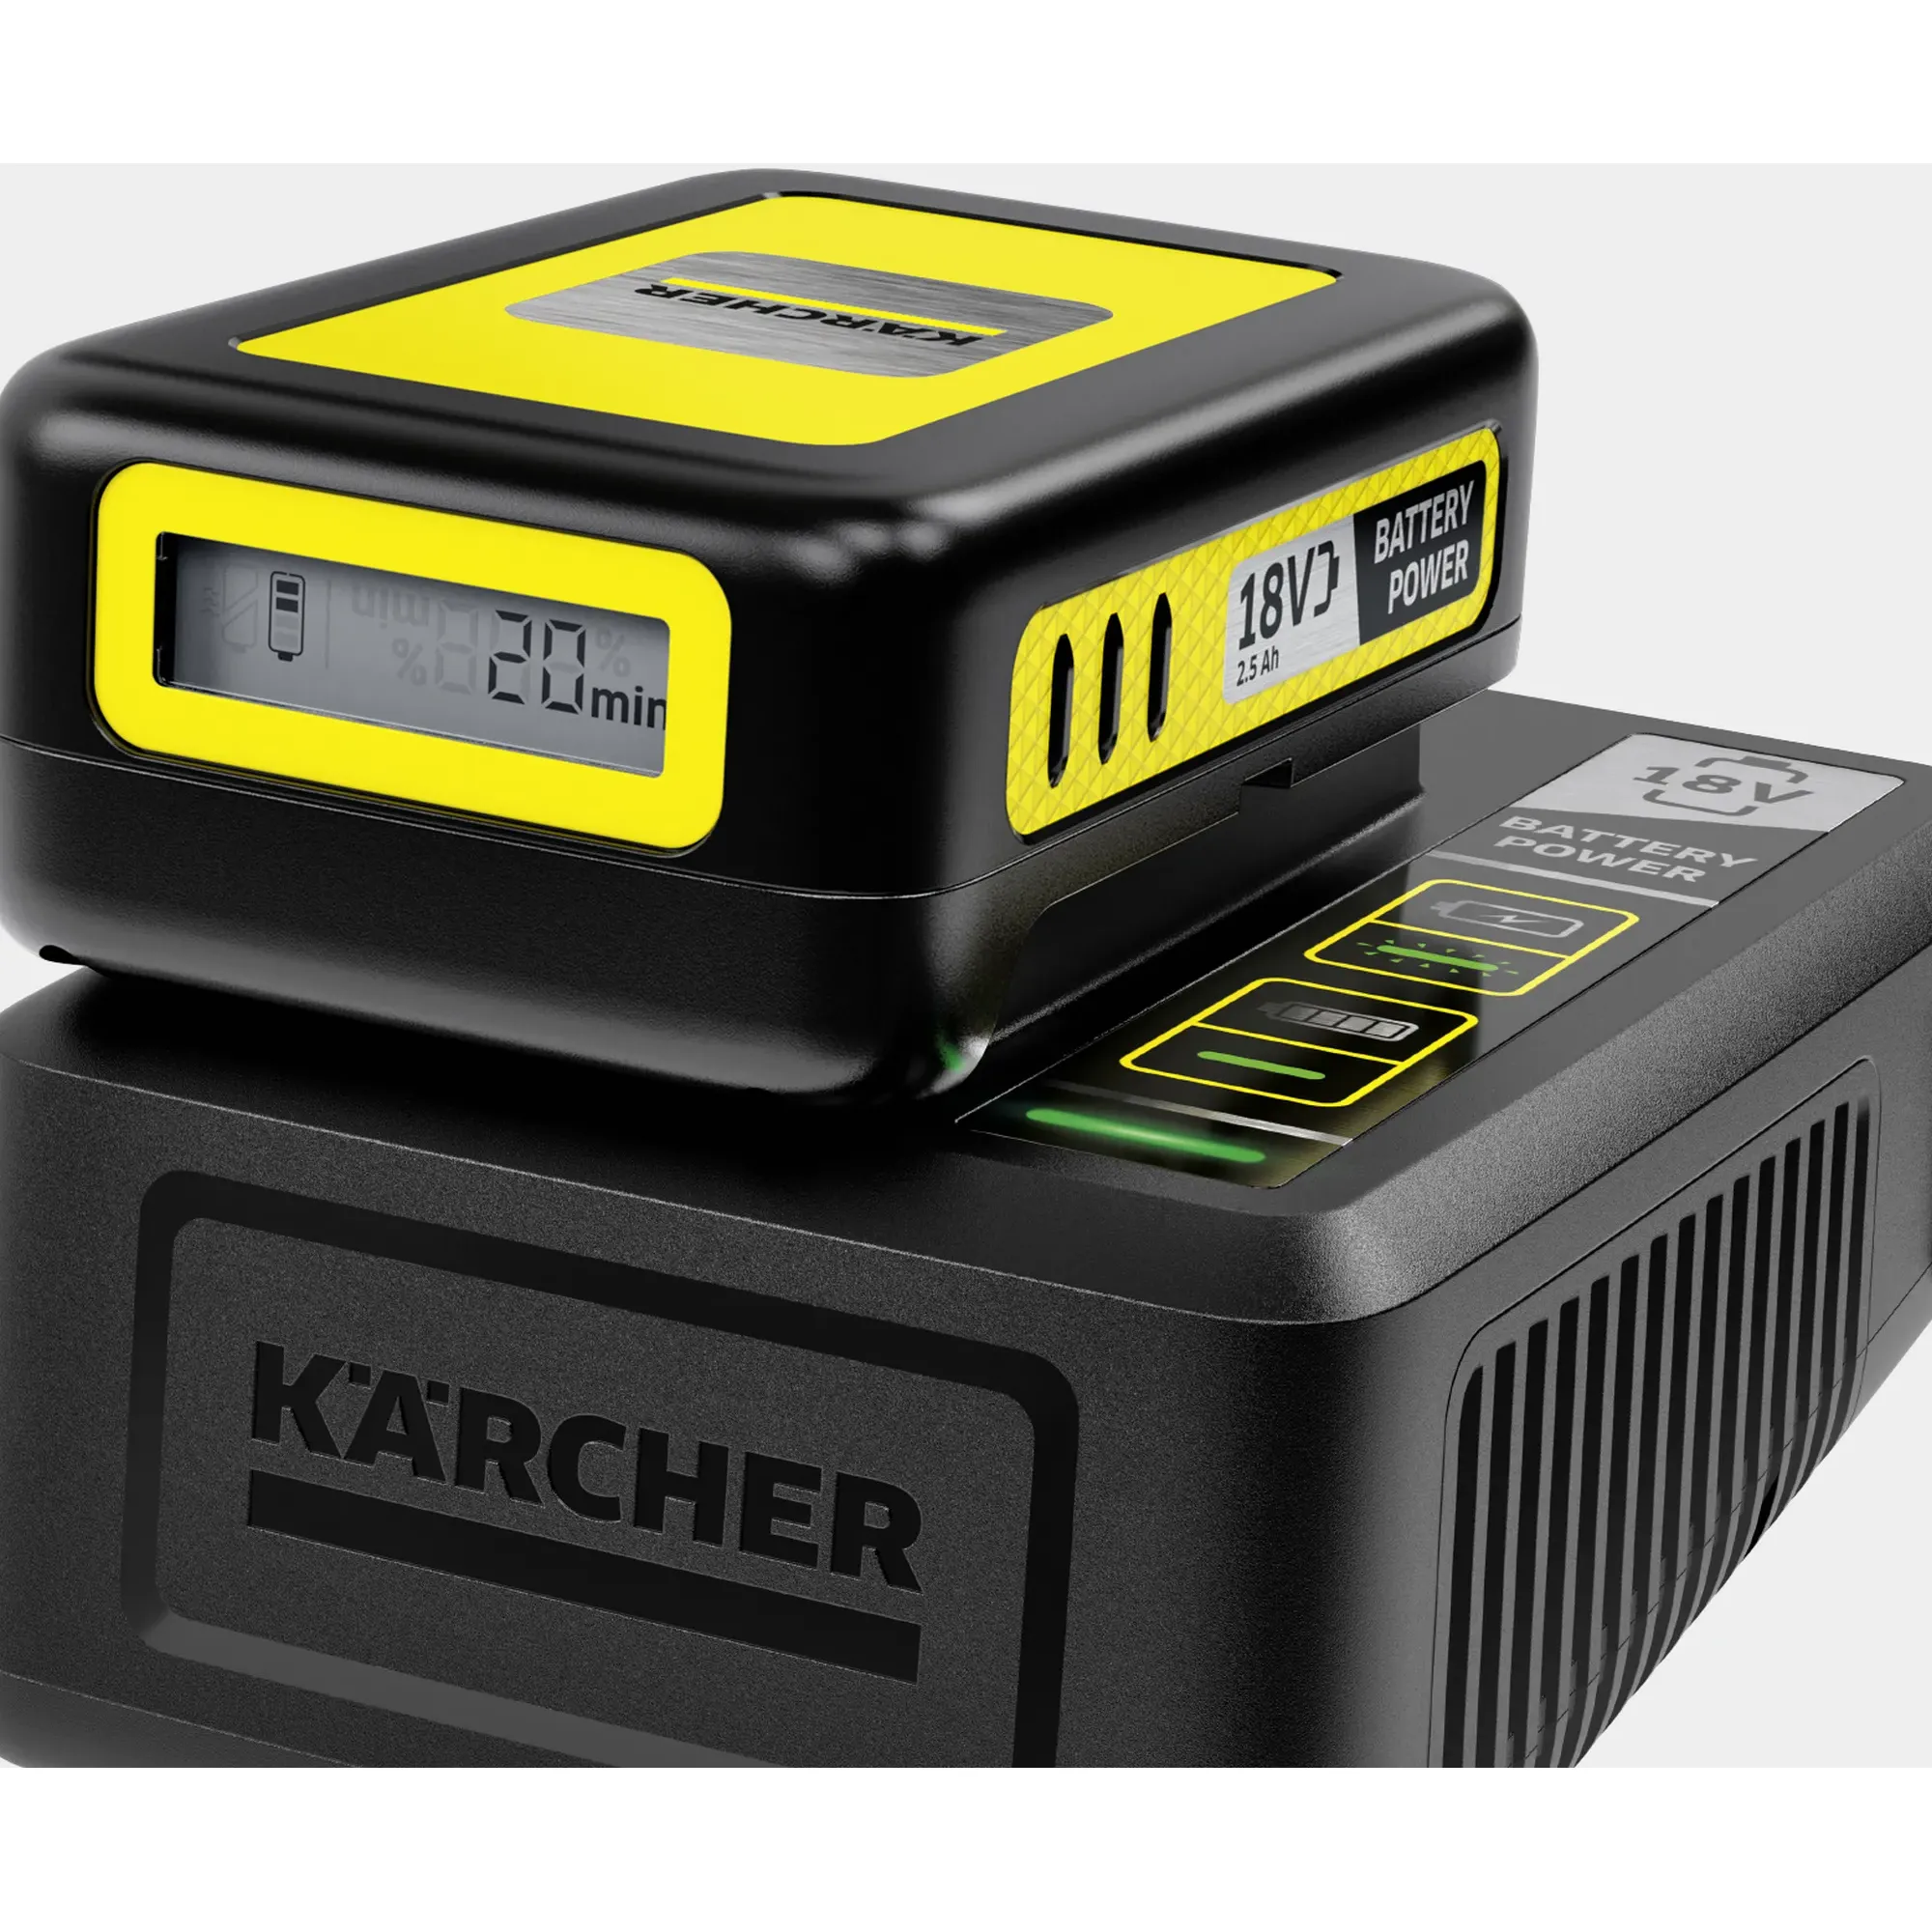 Bild von Starter Kit Battery Power 18/25 18 V Li-Ion 2,5 Ah 2.445-062.0